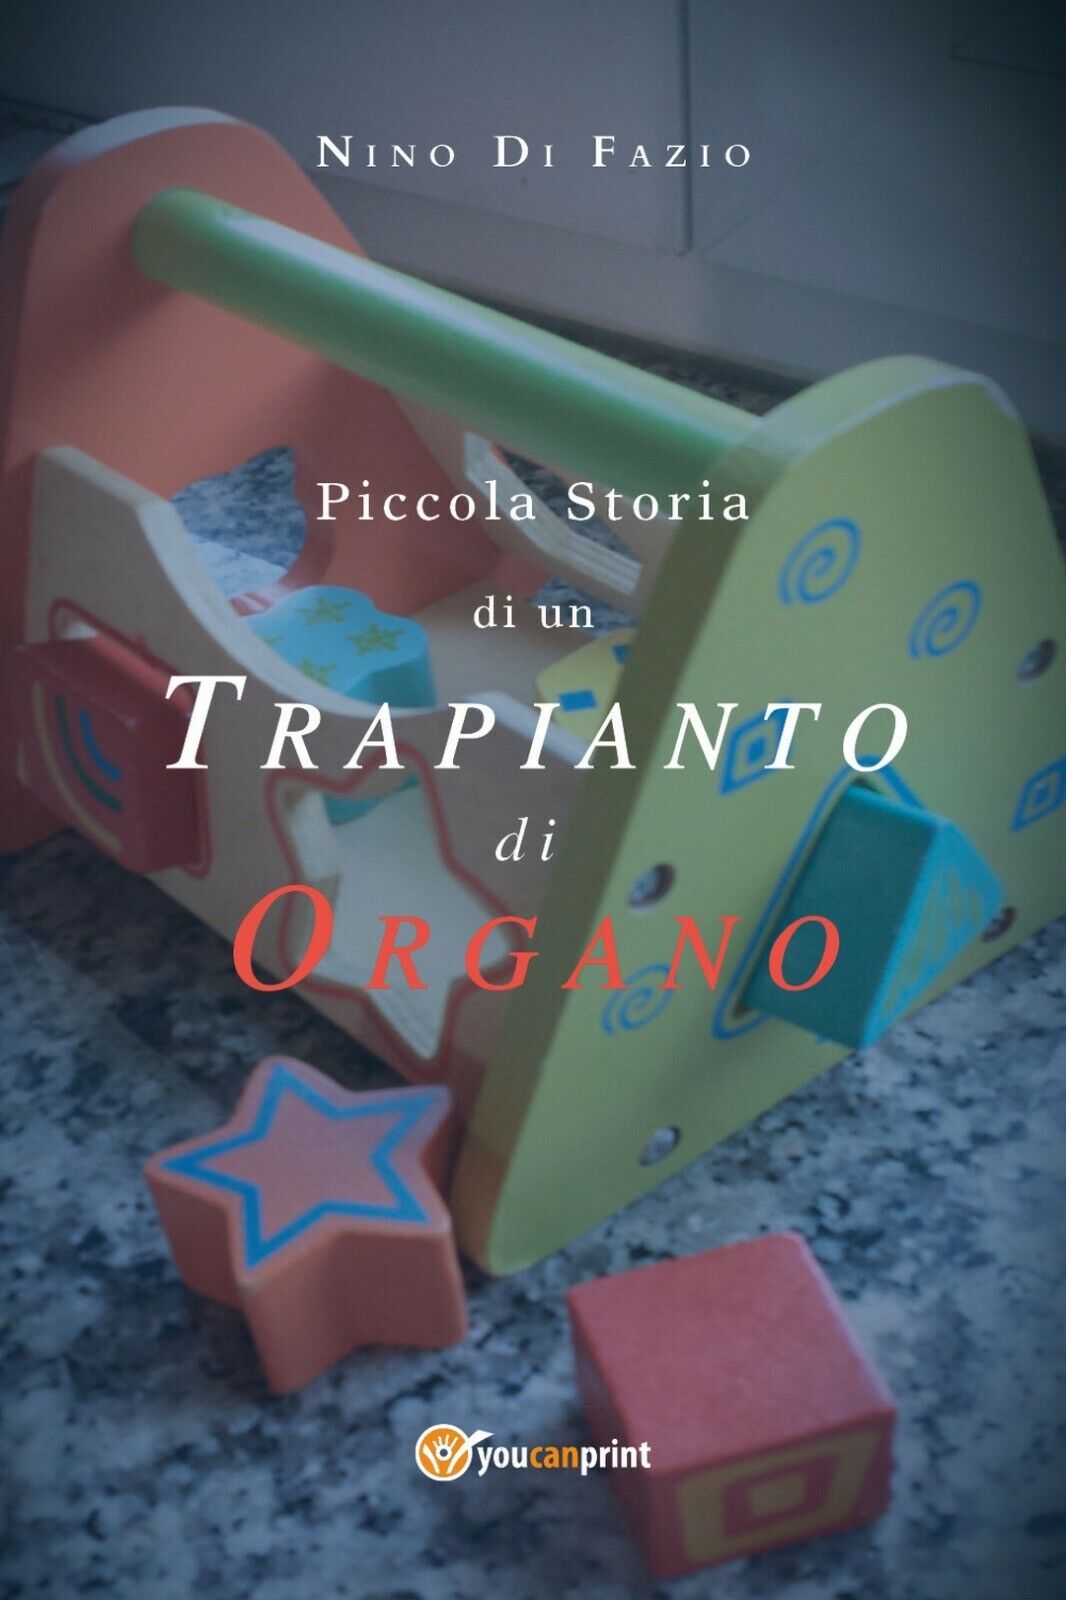 Piccola Storia di un trapianto di organo  di Nino Di Fazio,  2018,  Youcanprint